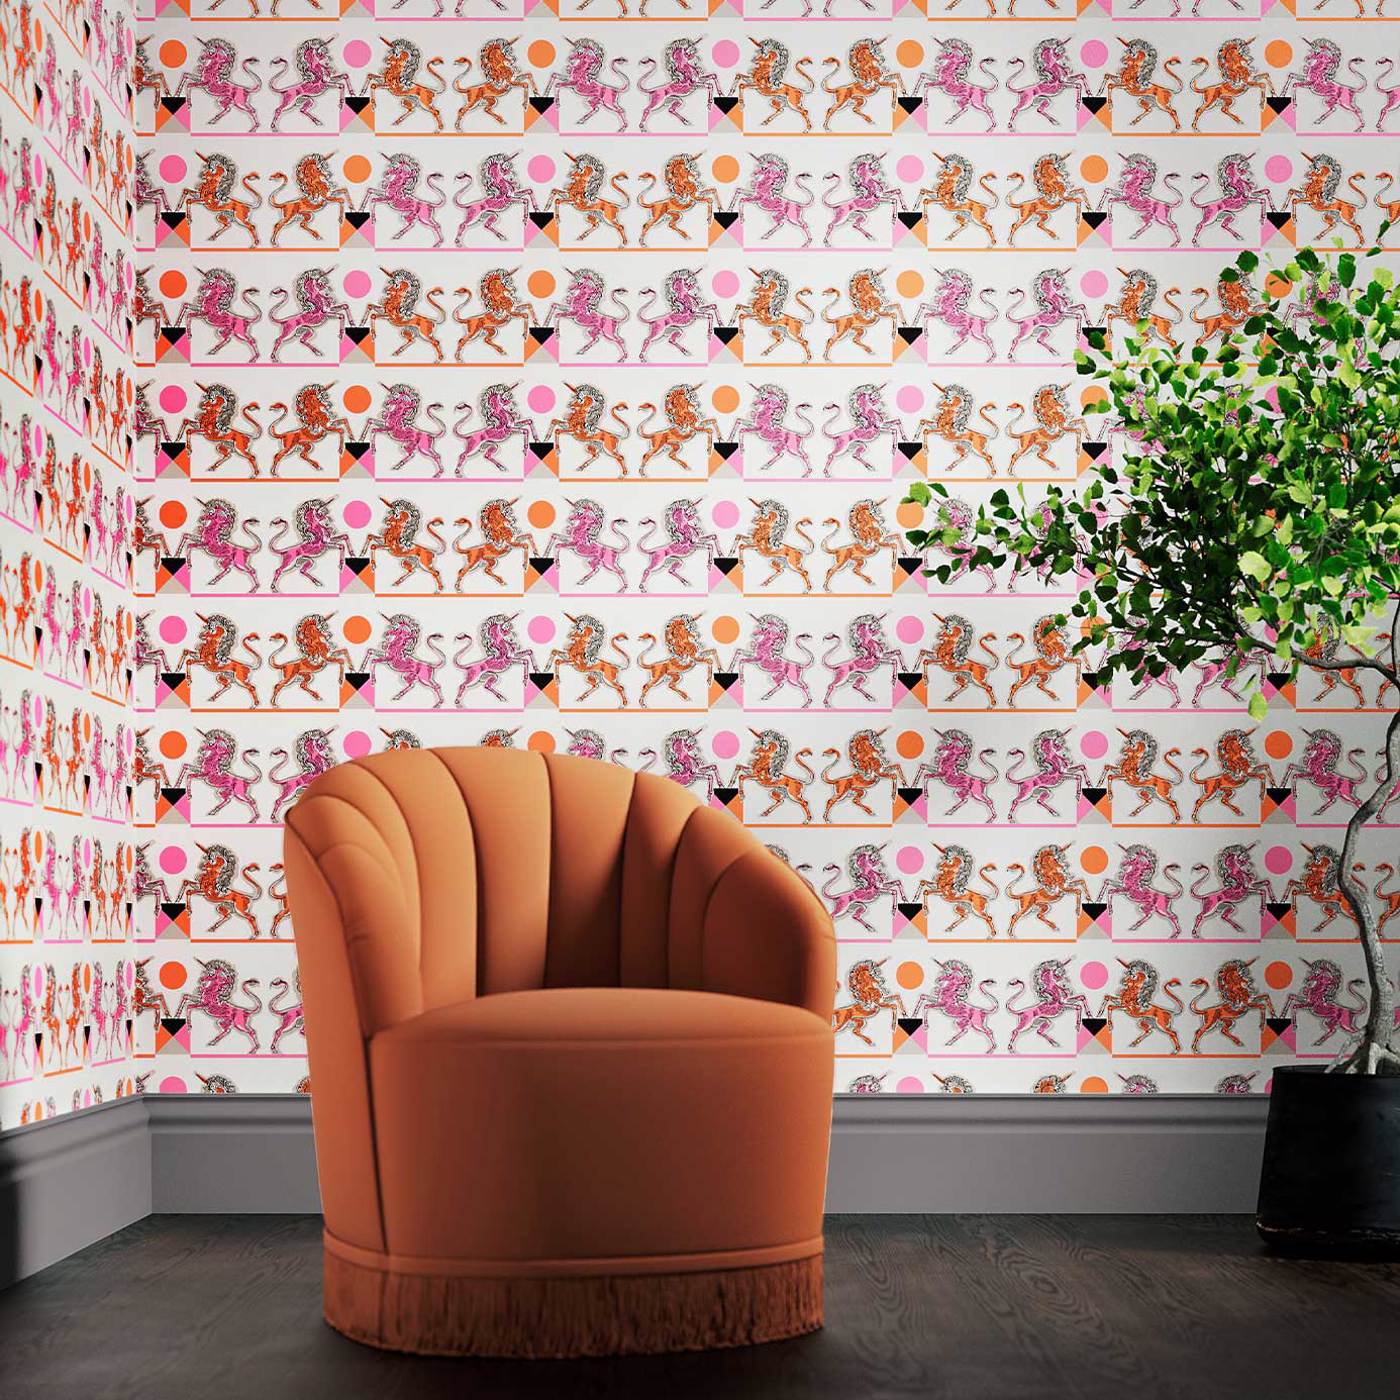 Elixir of Life Room Wallpaper - Pink